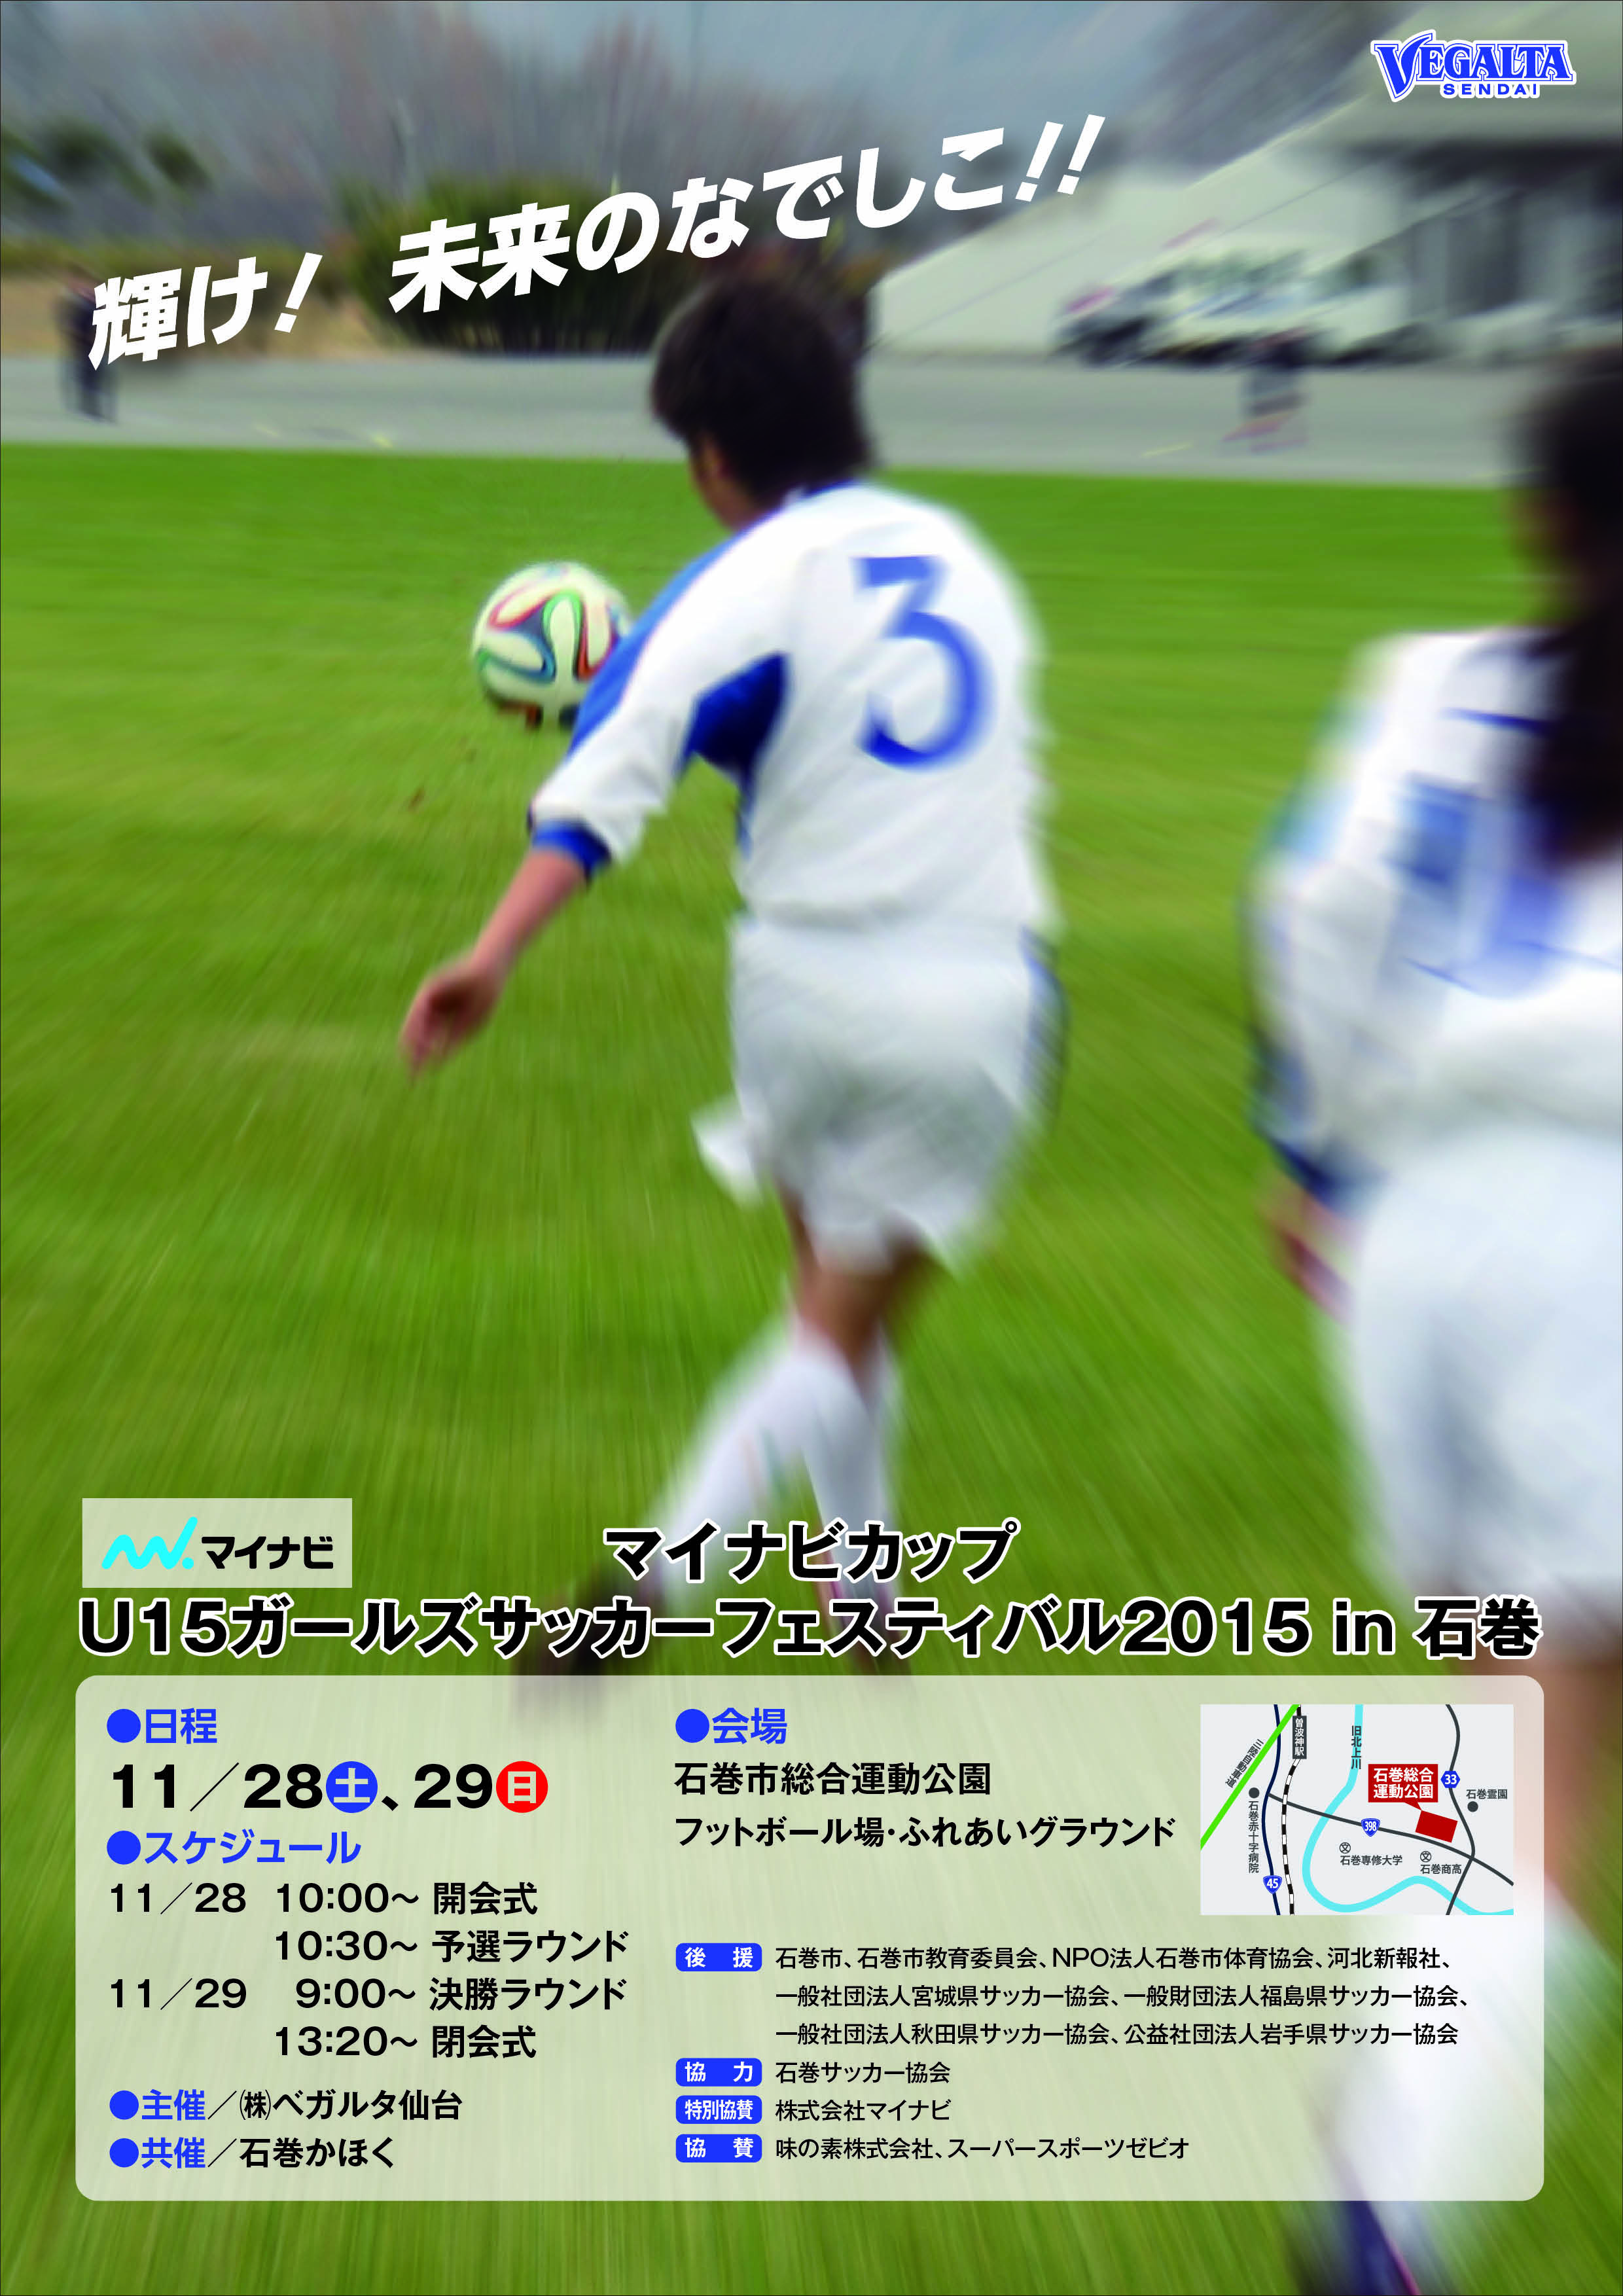 バックナンバー15 マイナビカップu 15ガールズサッカーフェスティバル15 In石巻 開催のお知らせ